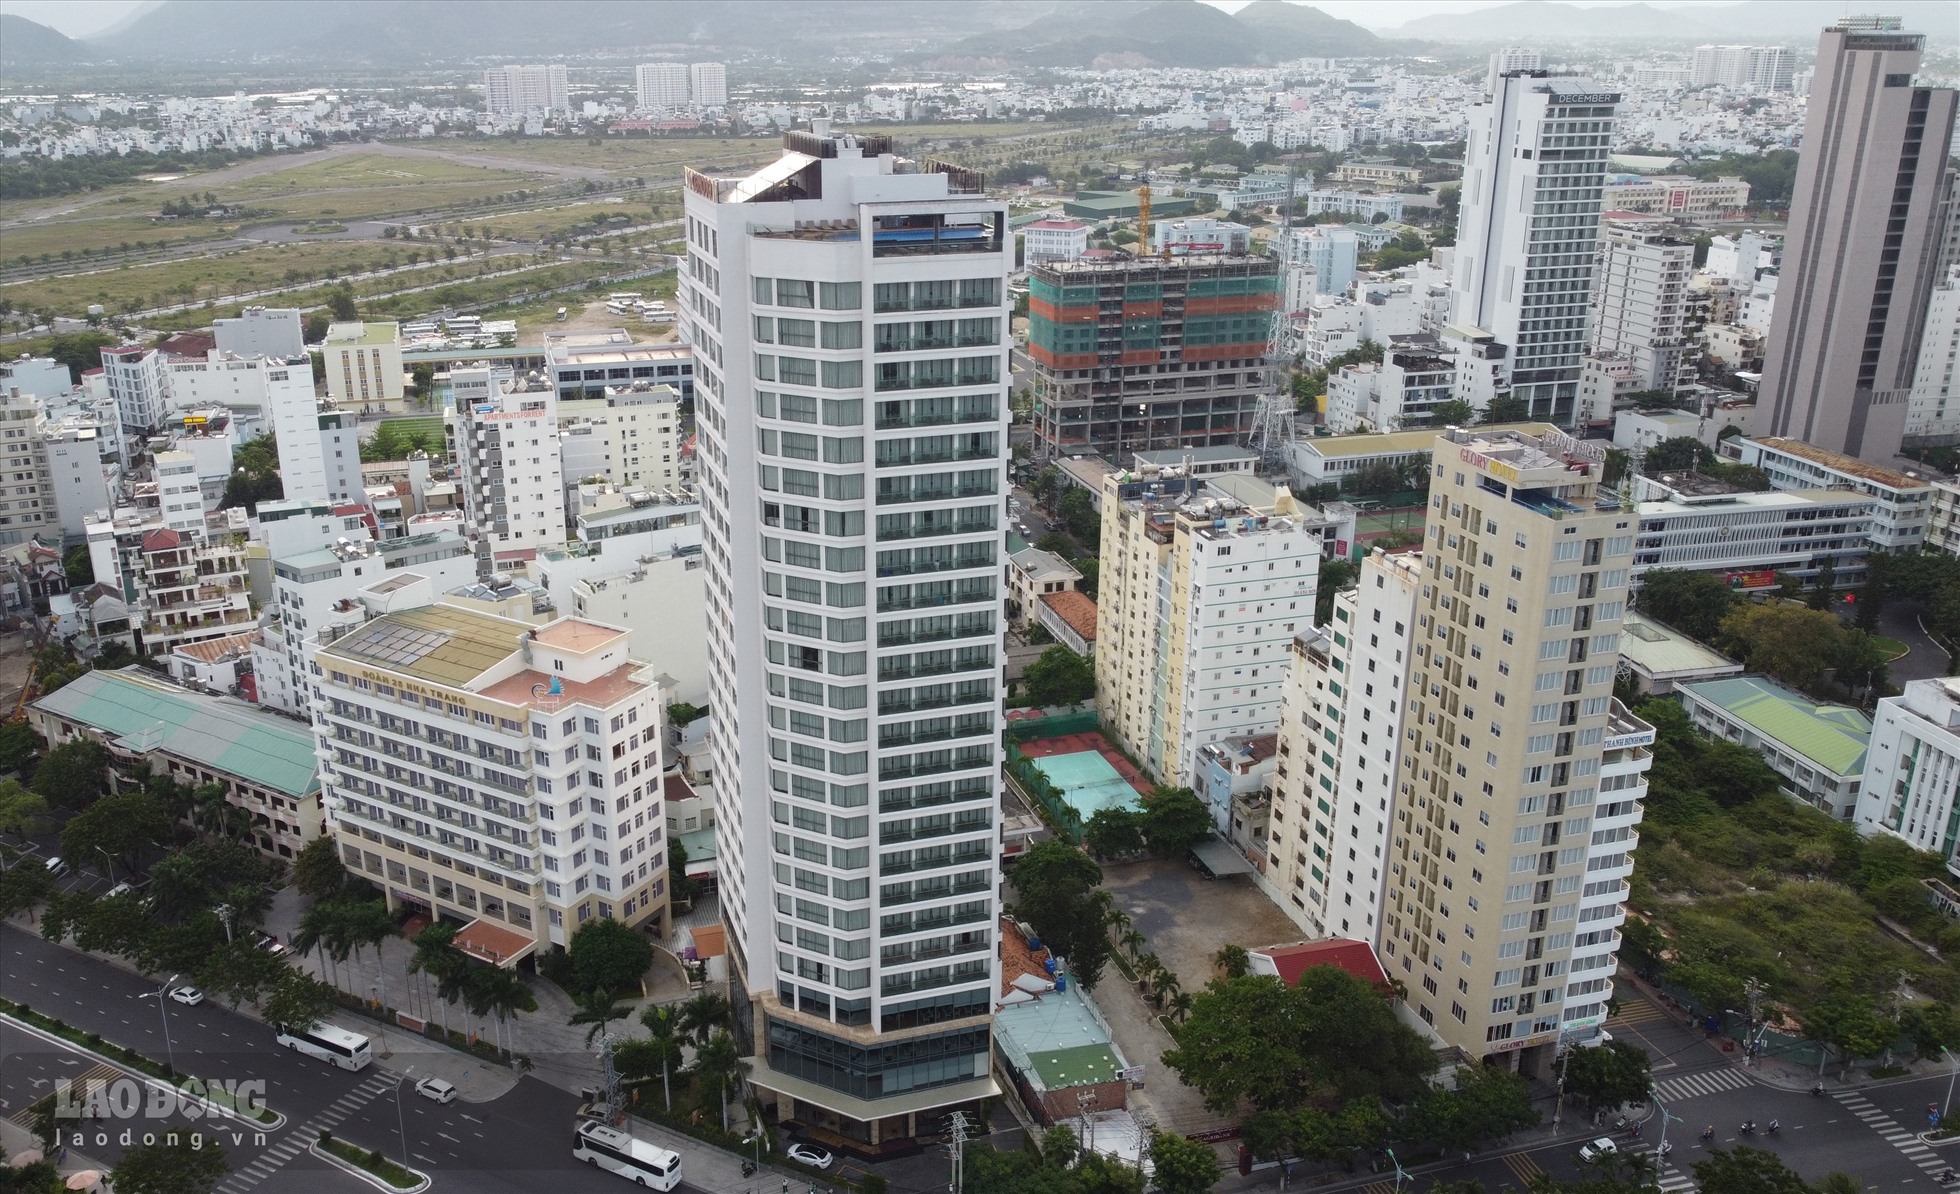 Trong hồ sơ của cơ quan quản lý nhà nước, tại khu đất số 86A Trần Phú có đầu tư  công trình “Khách sạn Bạch Kim”. Đây là dự án hợp tác giữa Cục chính trị Quân khu 5 và Công ty CP Đầu tư và Dịch vụ Khách sạn Thái Bình Dương.